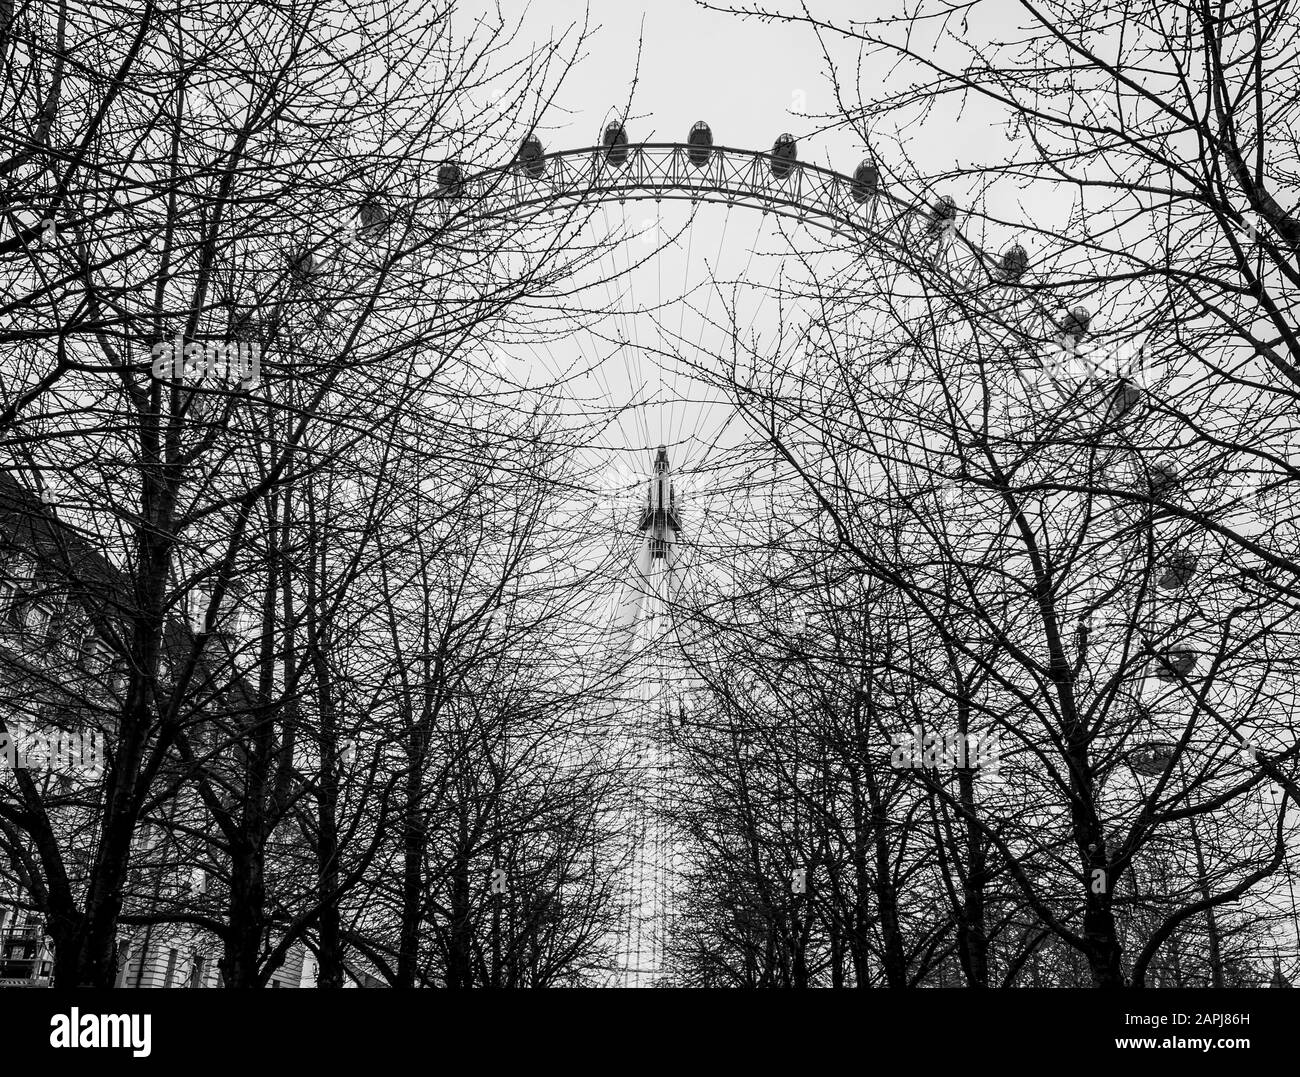 Londres, Royaume-Uni/Europe; 21/12/2019: The London Eye en noir et blanc Banque D'Images